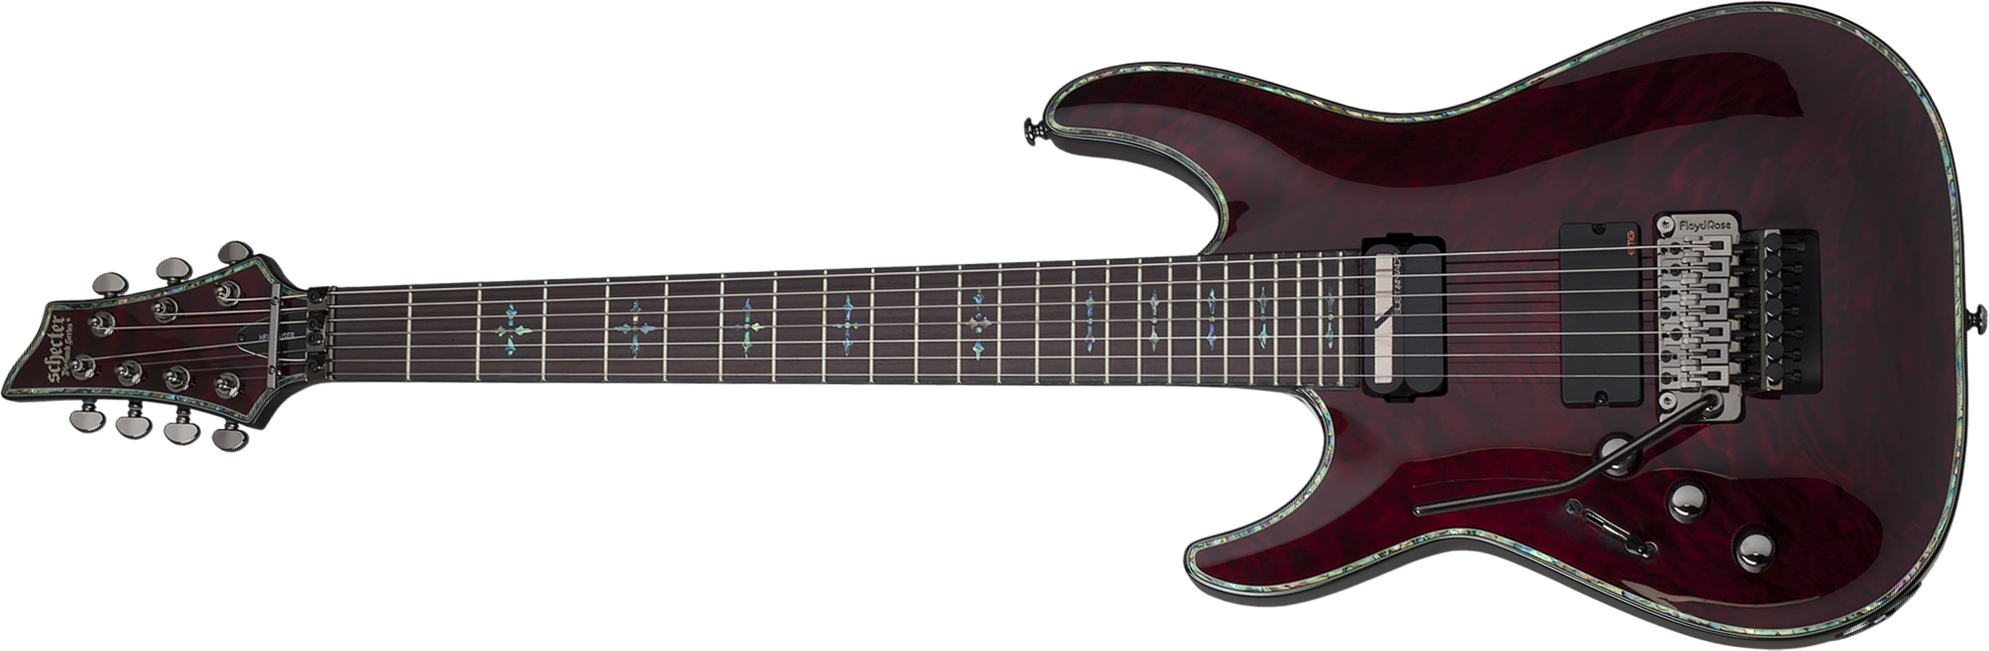 Schecter C-7 Fr S Lh Hellraiser 7c Gaucher 2h Emg Sustainiac Rw - Black Cherry - Left-handed electric guitar - Main picture